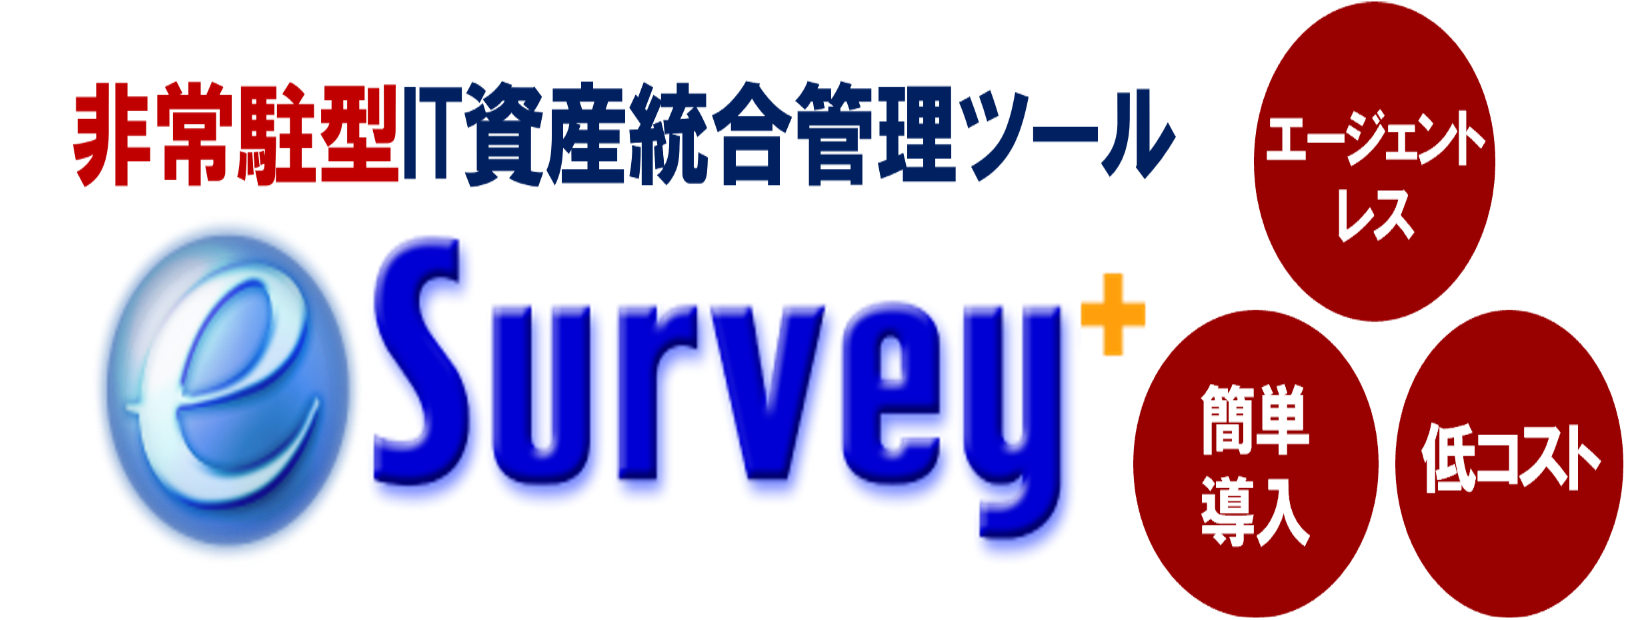 IT資産統合管理ツール　『e-Survey+』